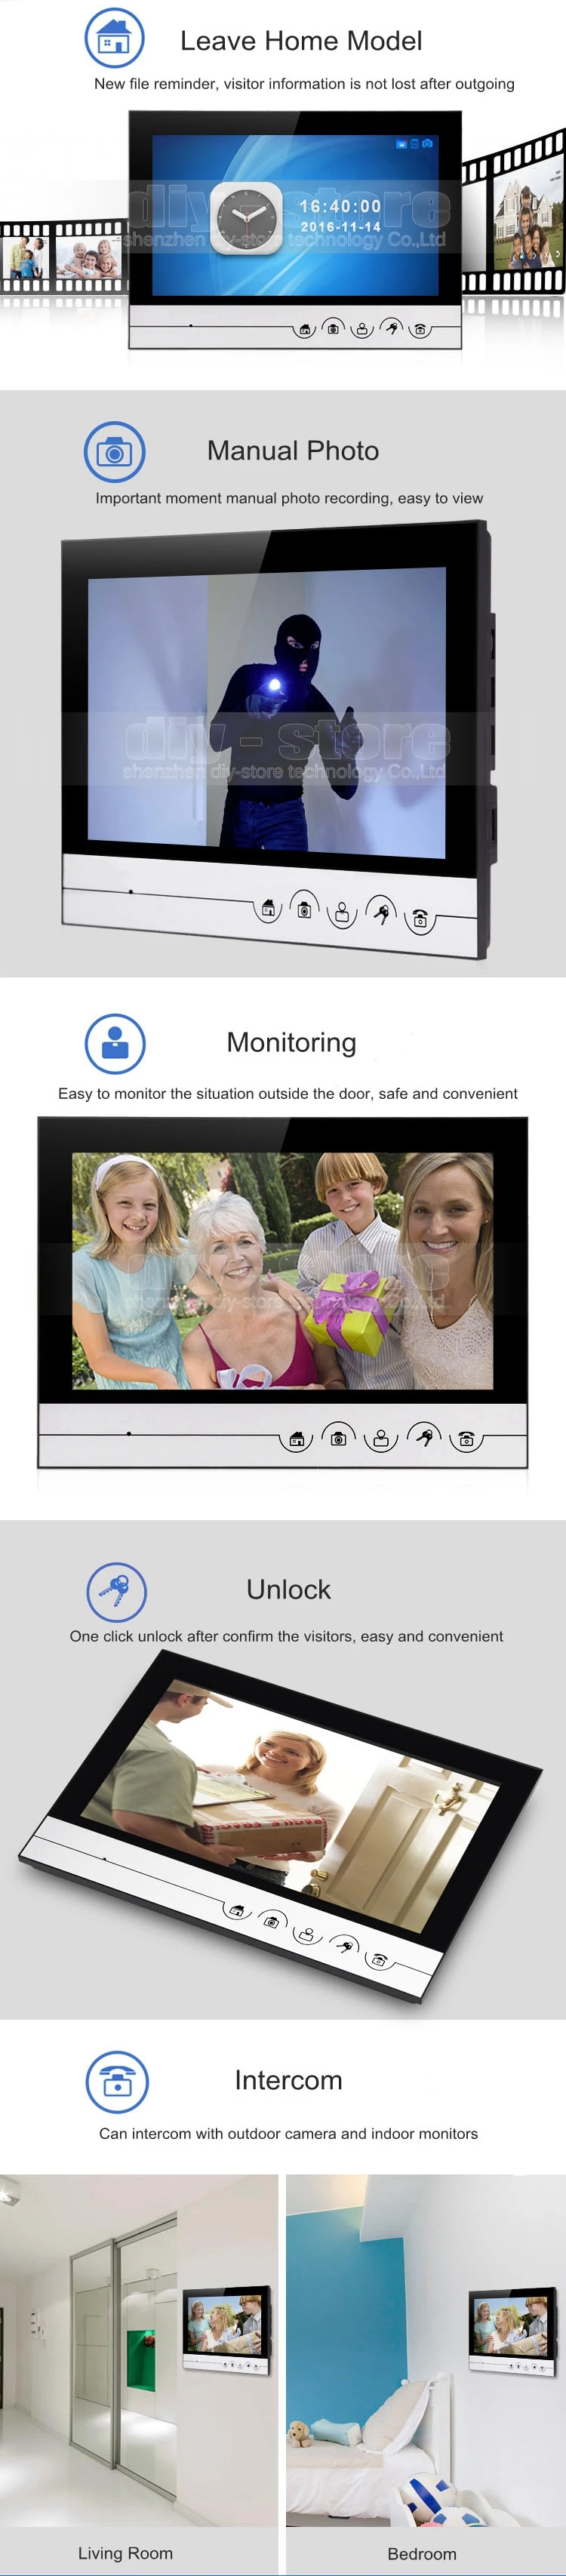 DIYSECUR " запись/фотография видеодомофон дверной звонок видео домофон система IR камера Встроенный RFID считыватель для 2 семьи